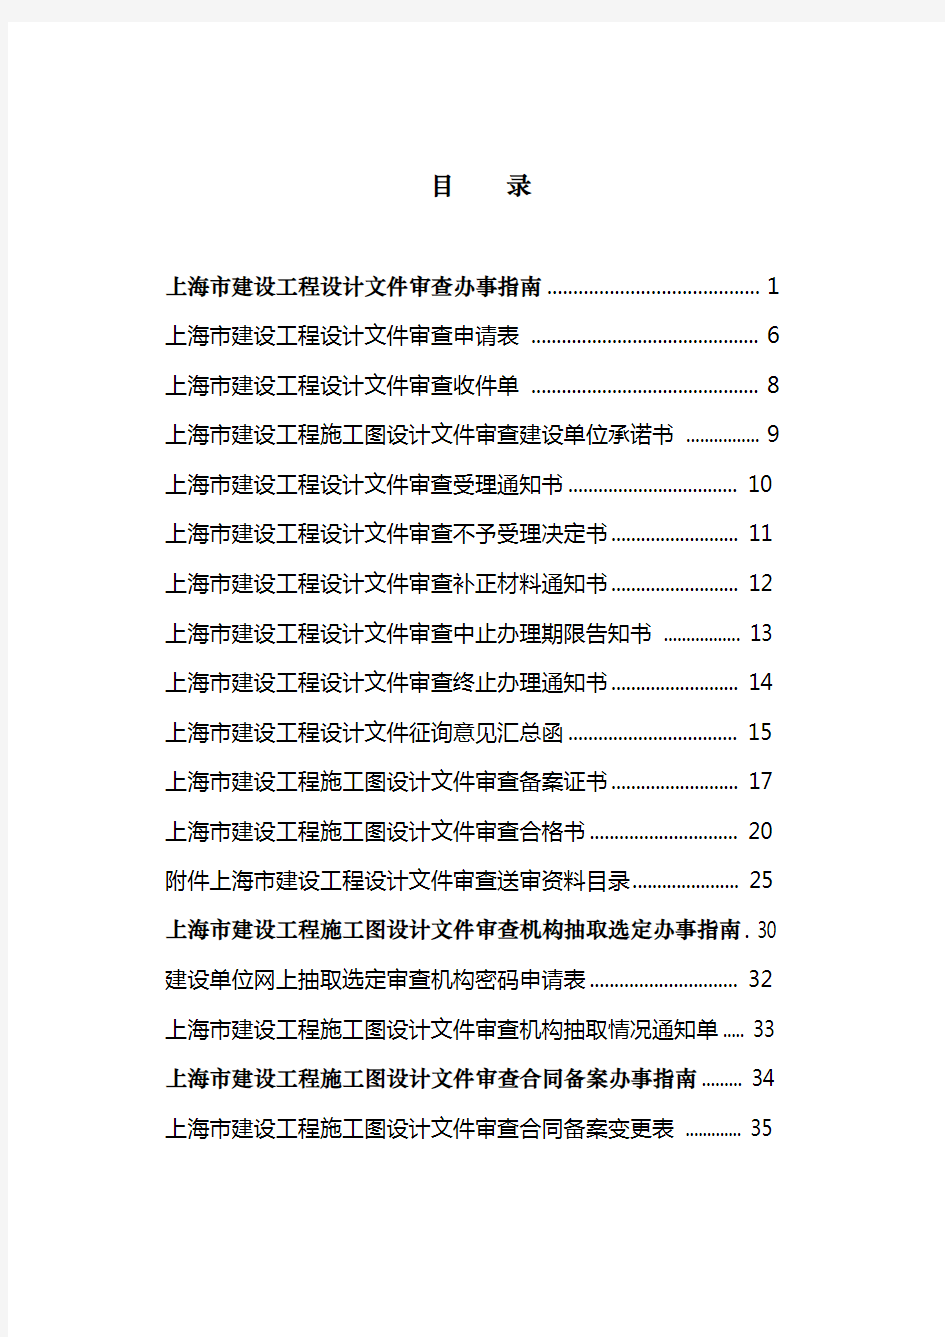 上海建筑项目审批手续办事指南(修订版)